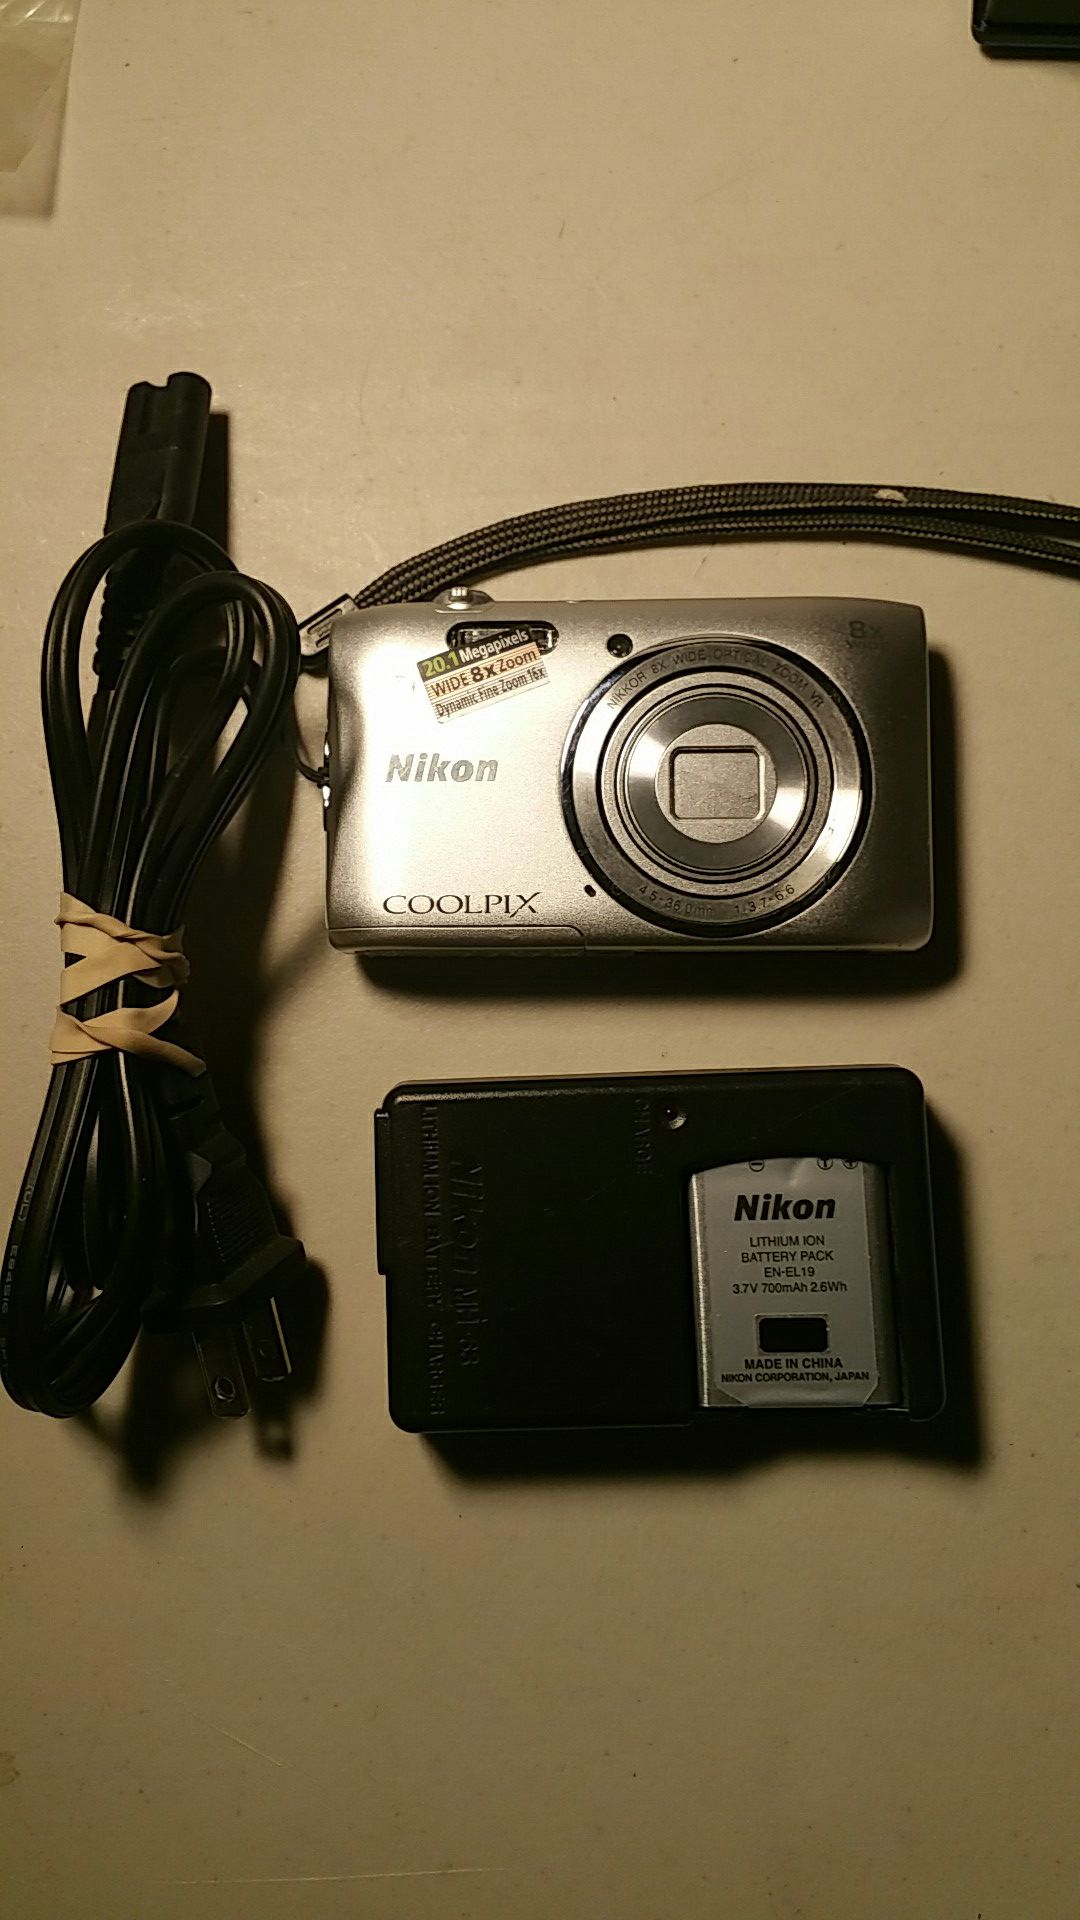 Nikon Coolpix S3600 20.1 megapixel digital camera silver